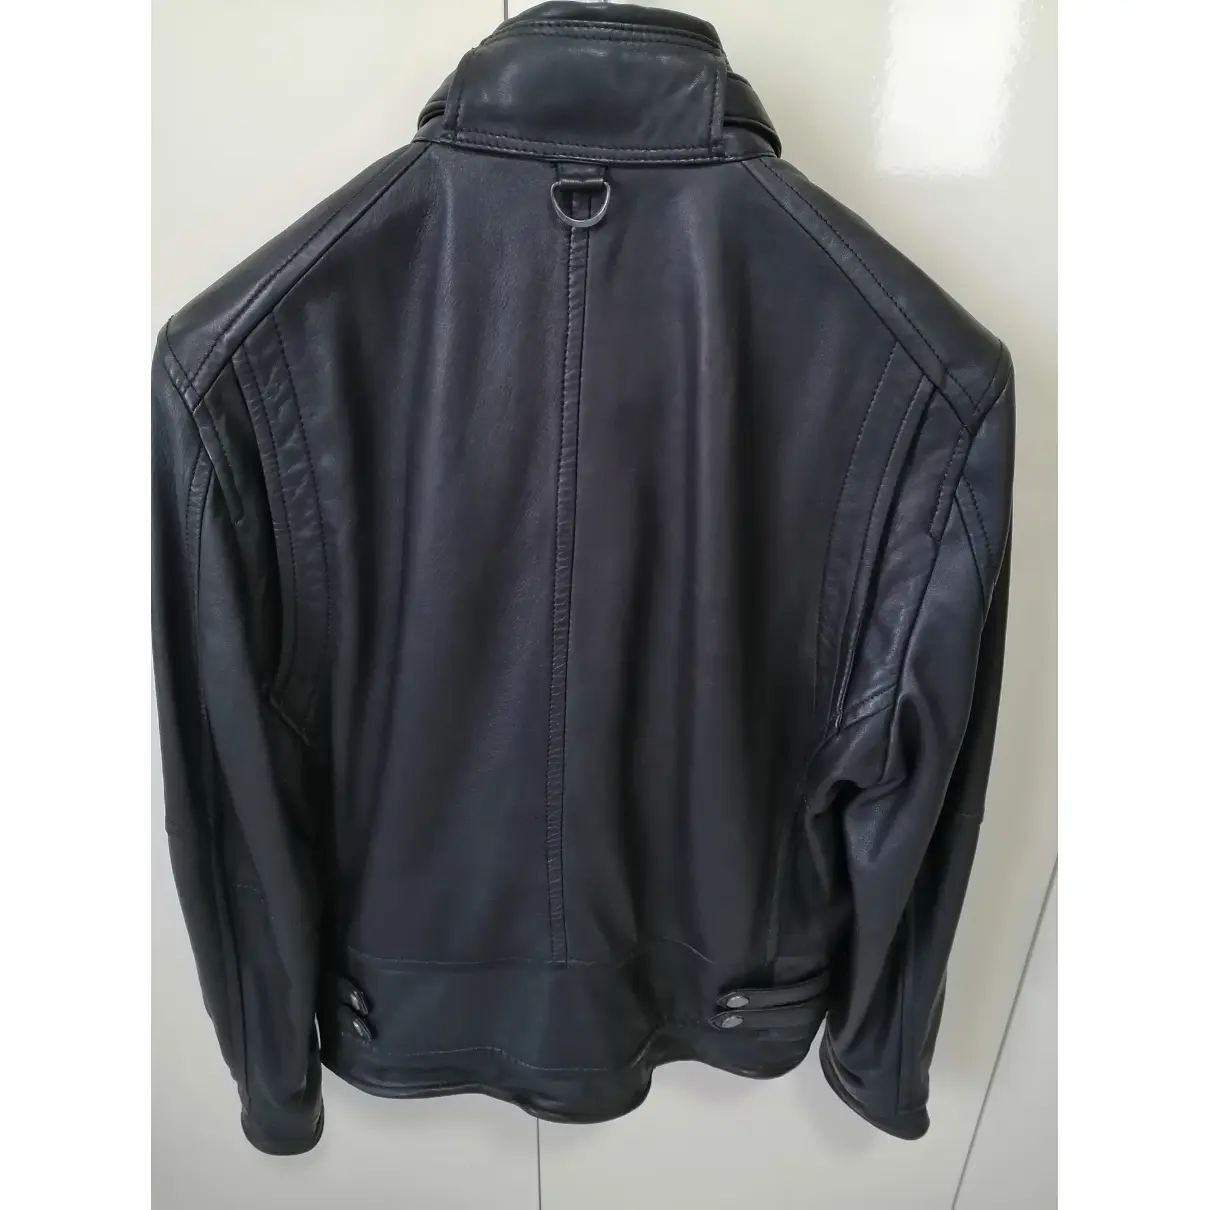 Buy Mango Leather jacket online